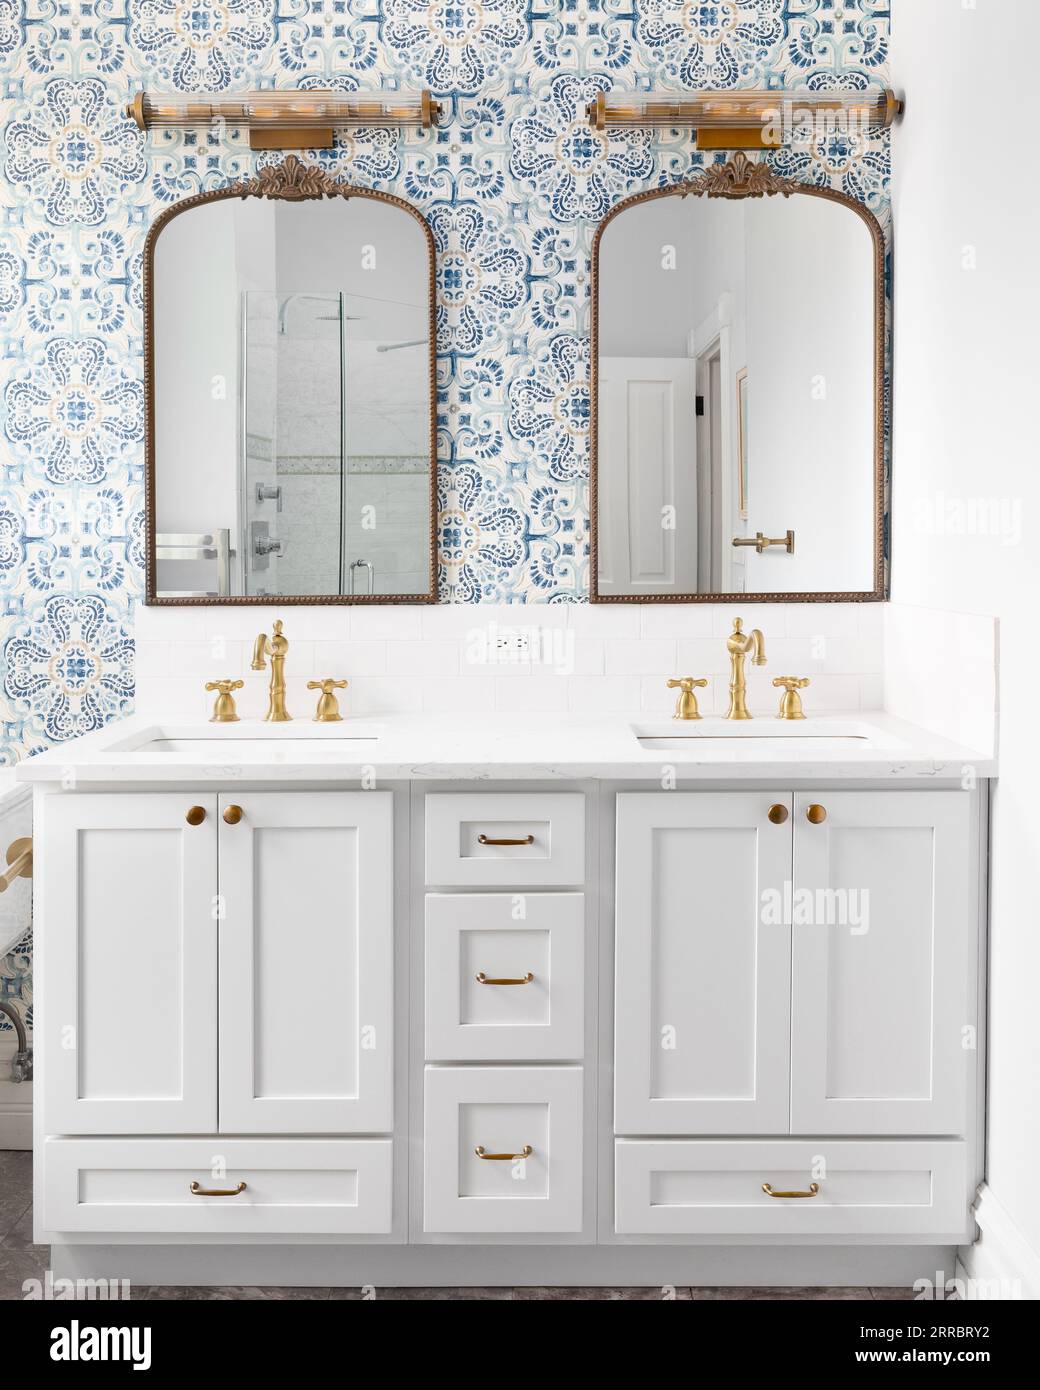 Un détail de salle de bain avec un papier peint bleu et jaune, des miroirs en bronze et des luminaires, des robinets en or, une armoire grise et un dosseret de tuile de métro. Banque D'Images